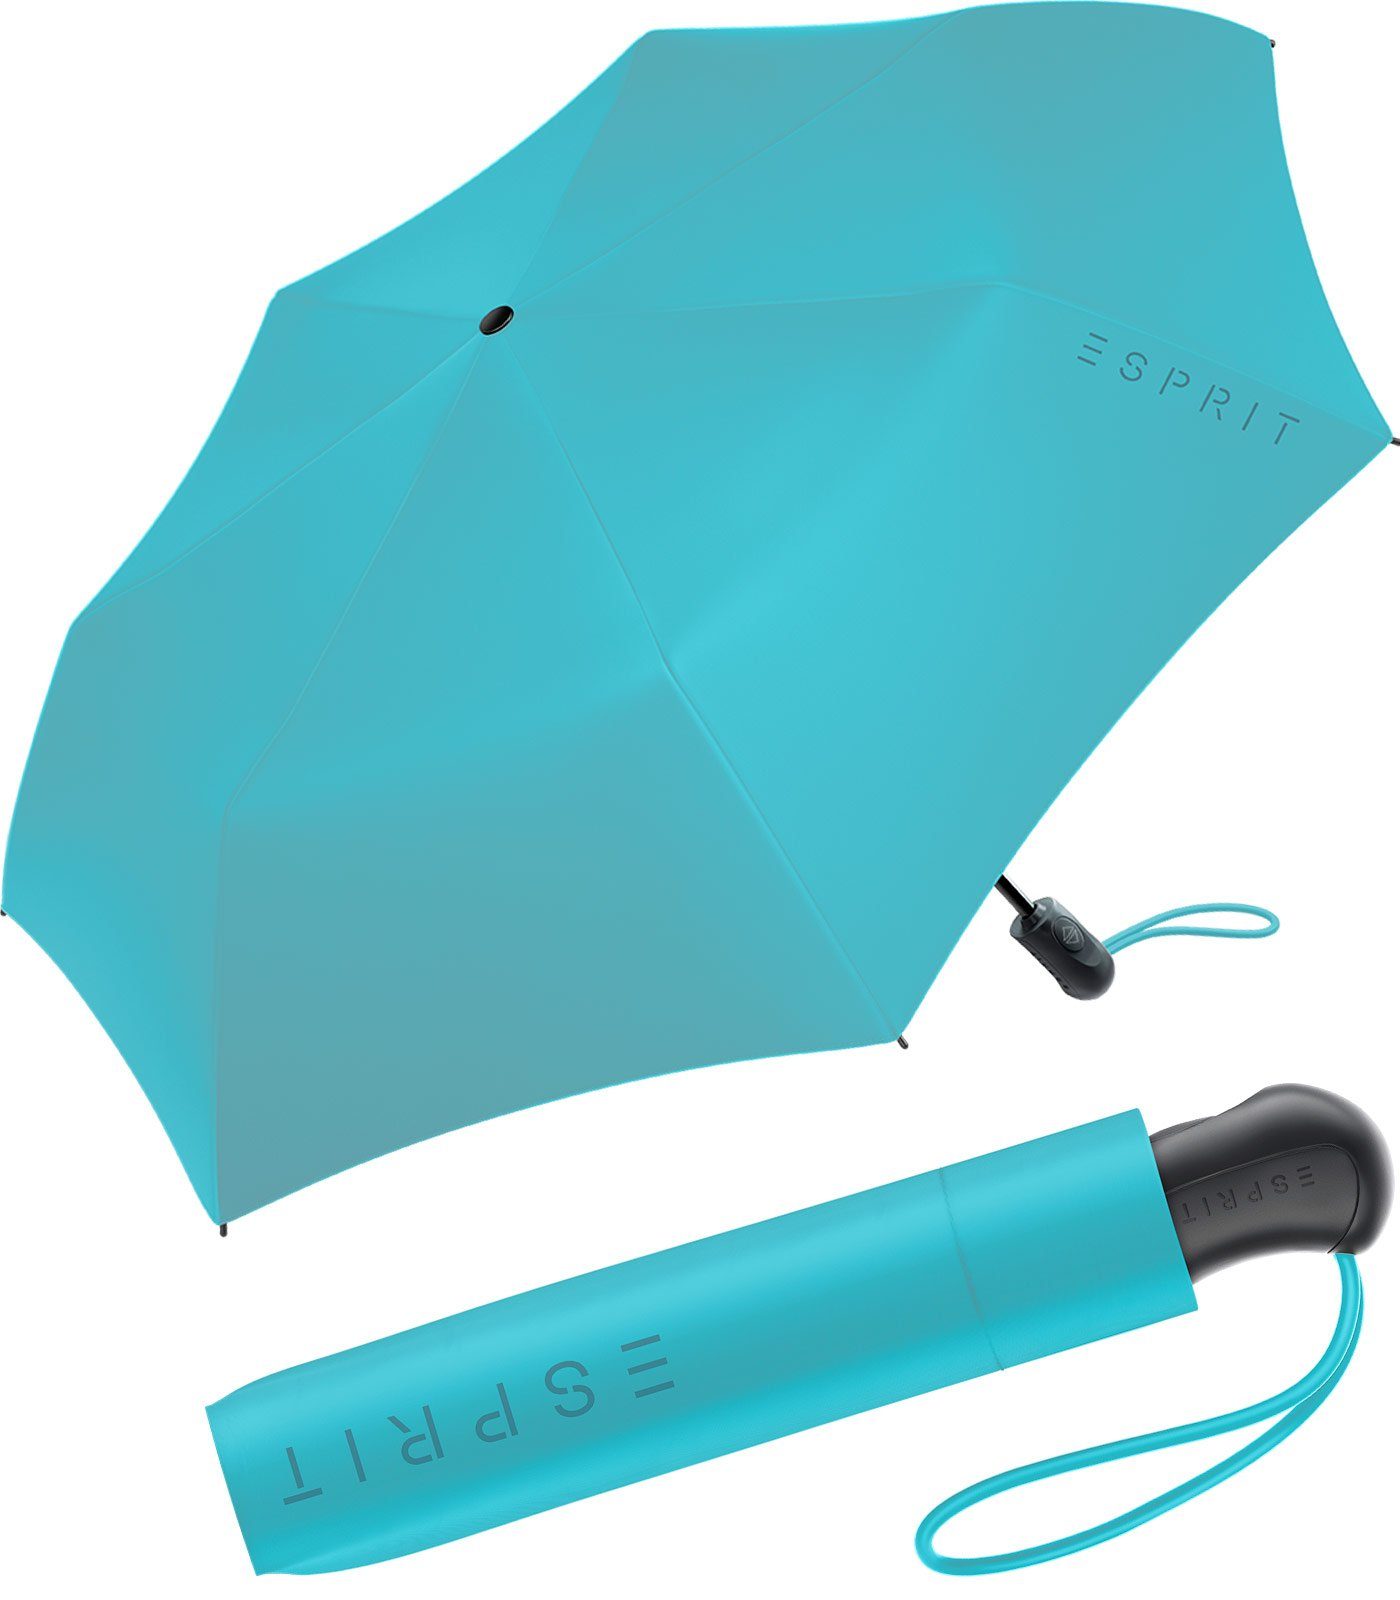 Esprit Taschenregenschirm Damen Easymatic Light Auf-Zu Automatik FJ 2023, stabil und praktisch, in den neuen Trendfarben blau